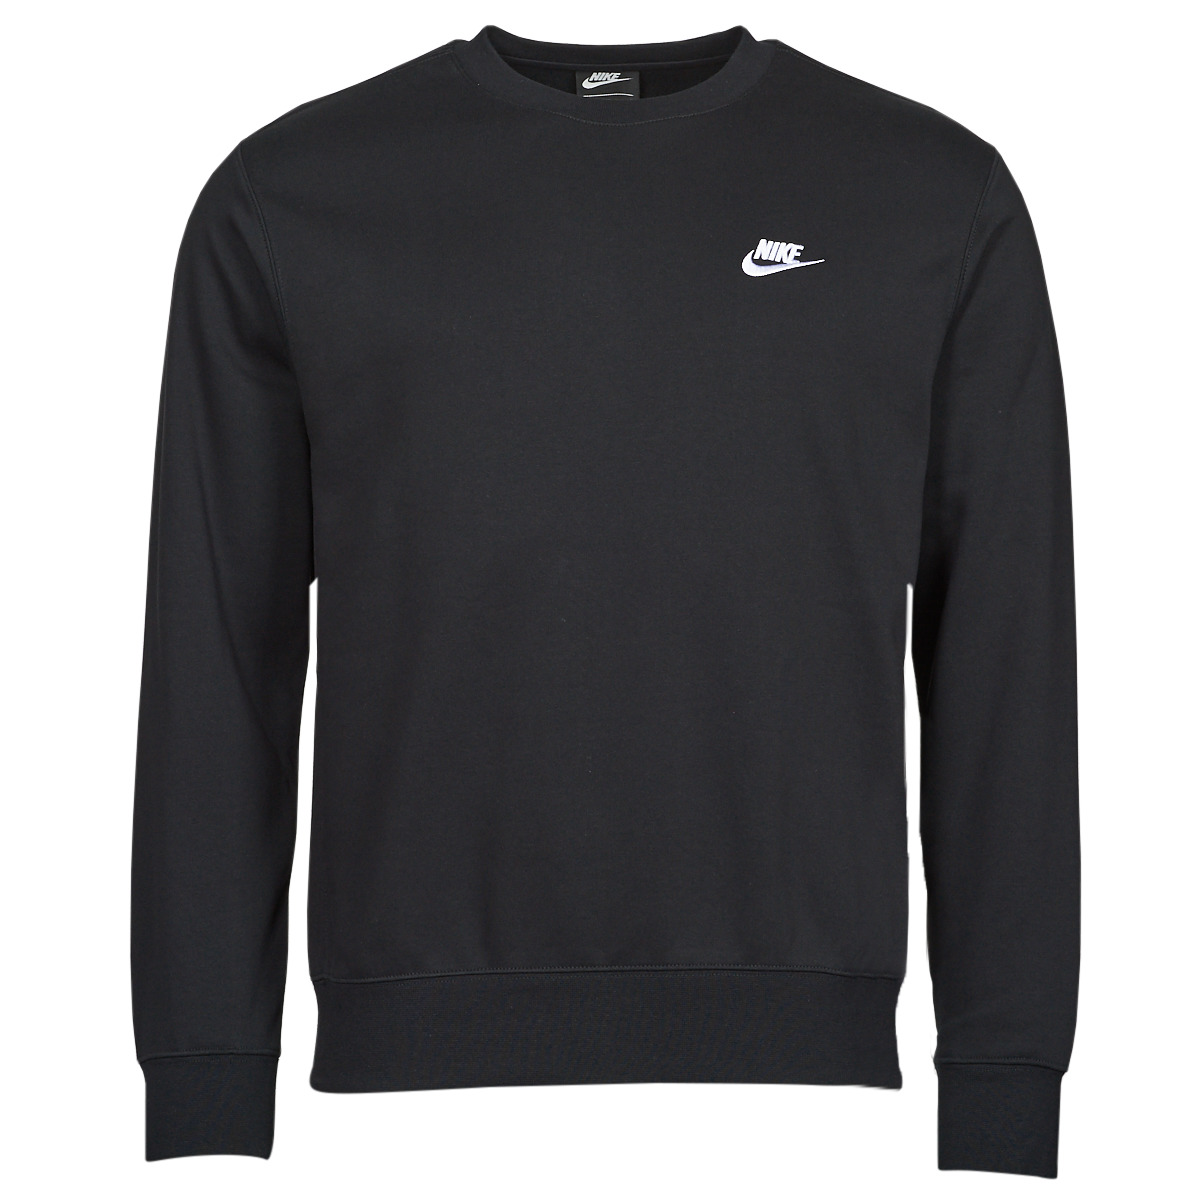 Nike - NSW Club Fleece Crew - Zwarte Sweater - L - Zwart